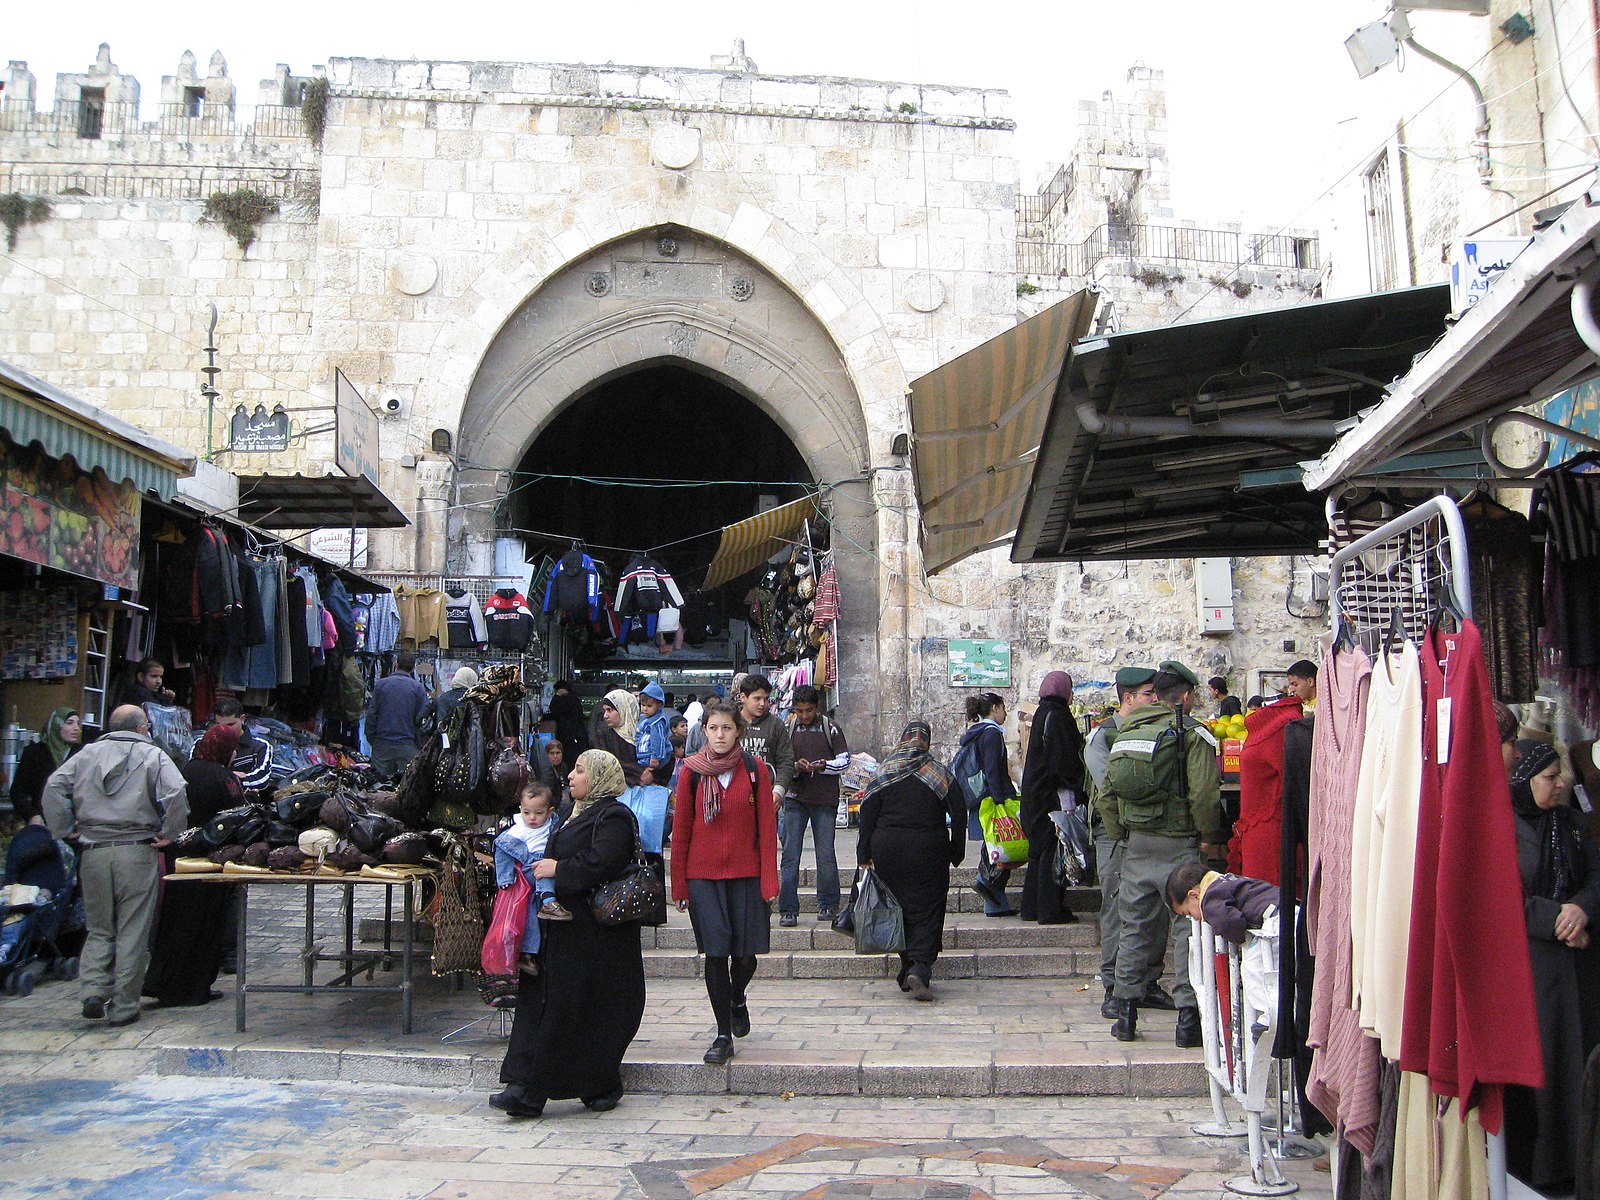 damascus gate shops jerusalem old city